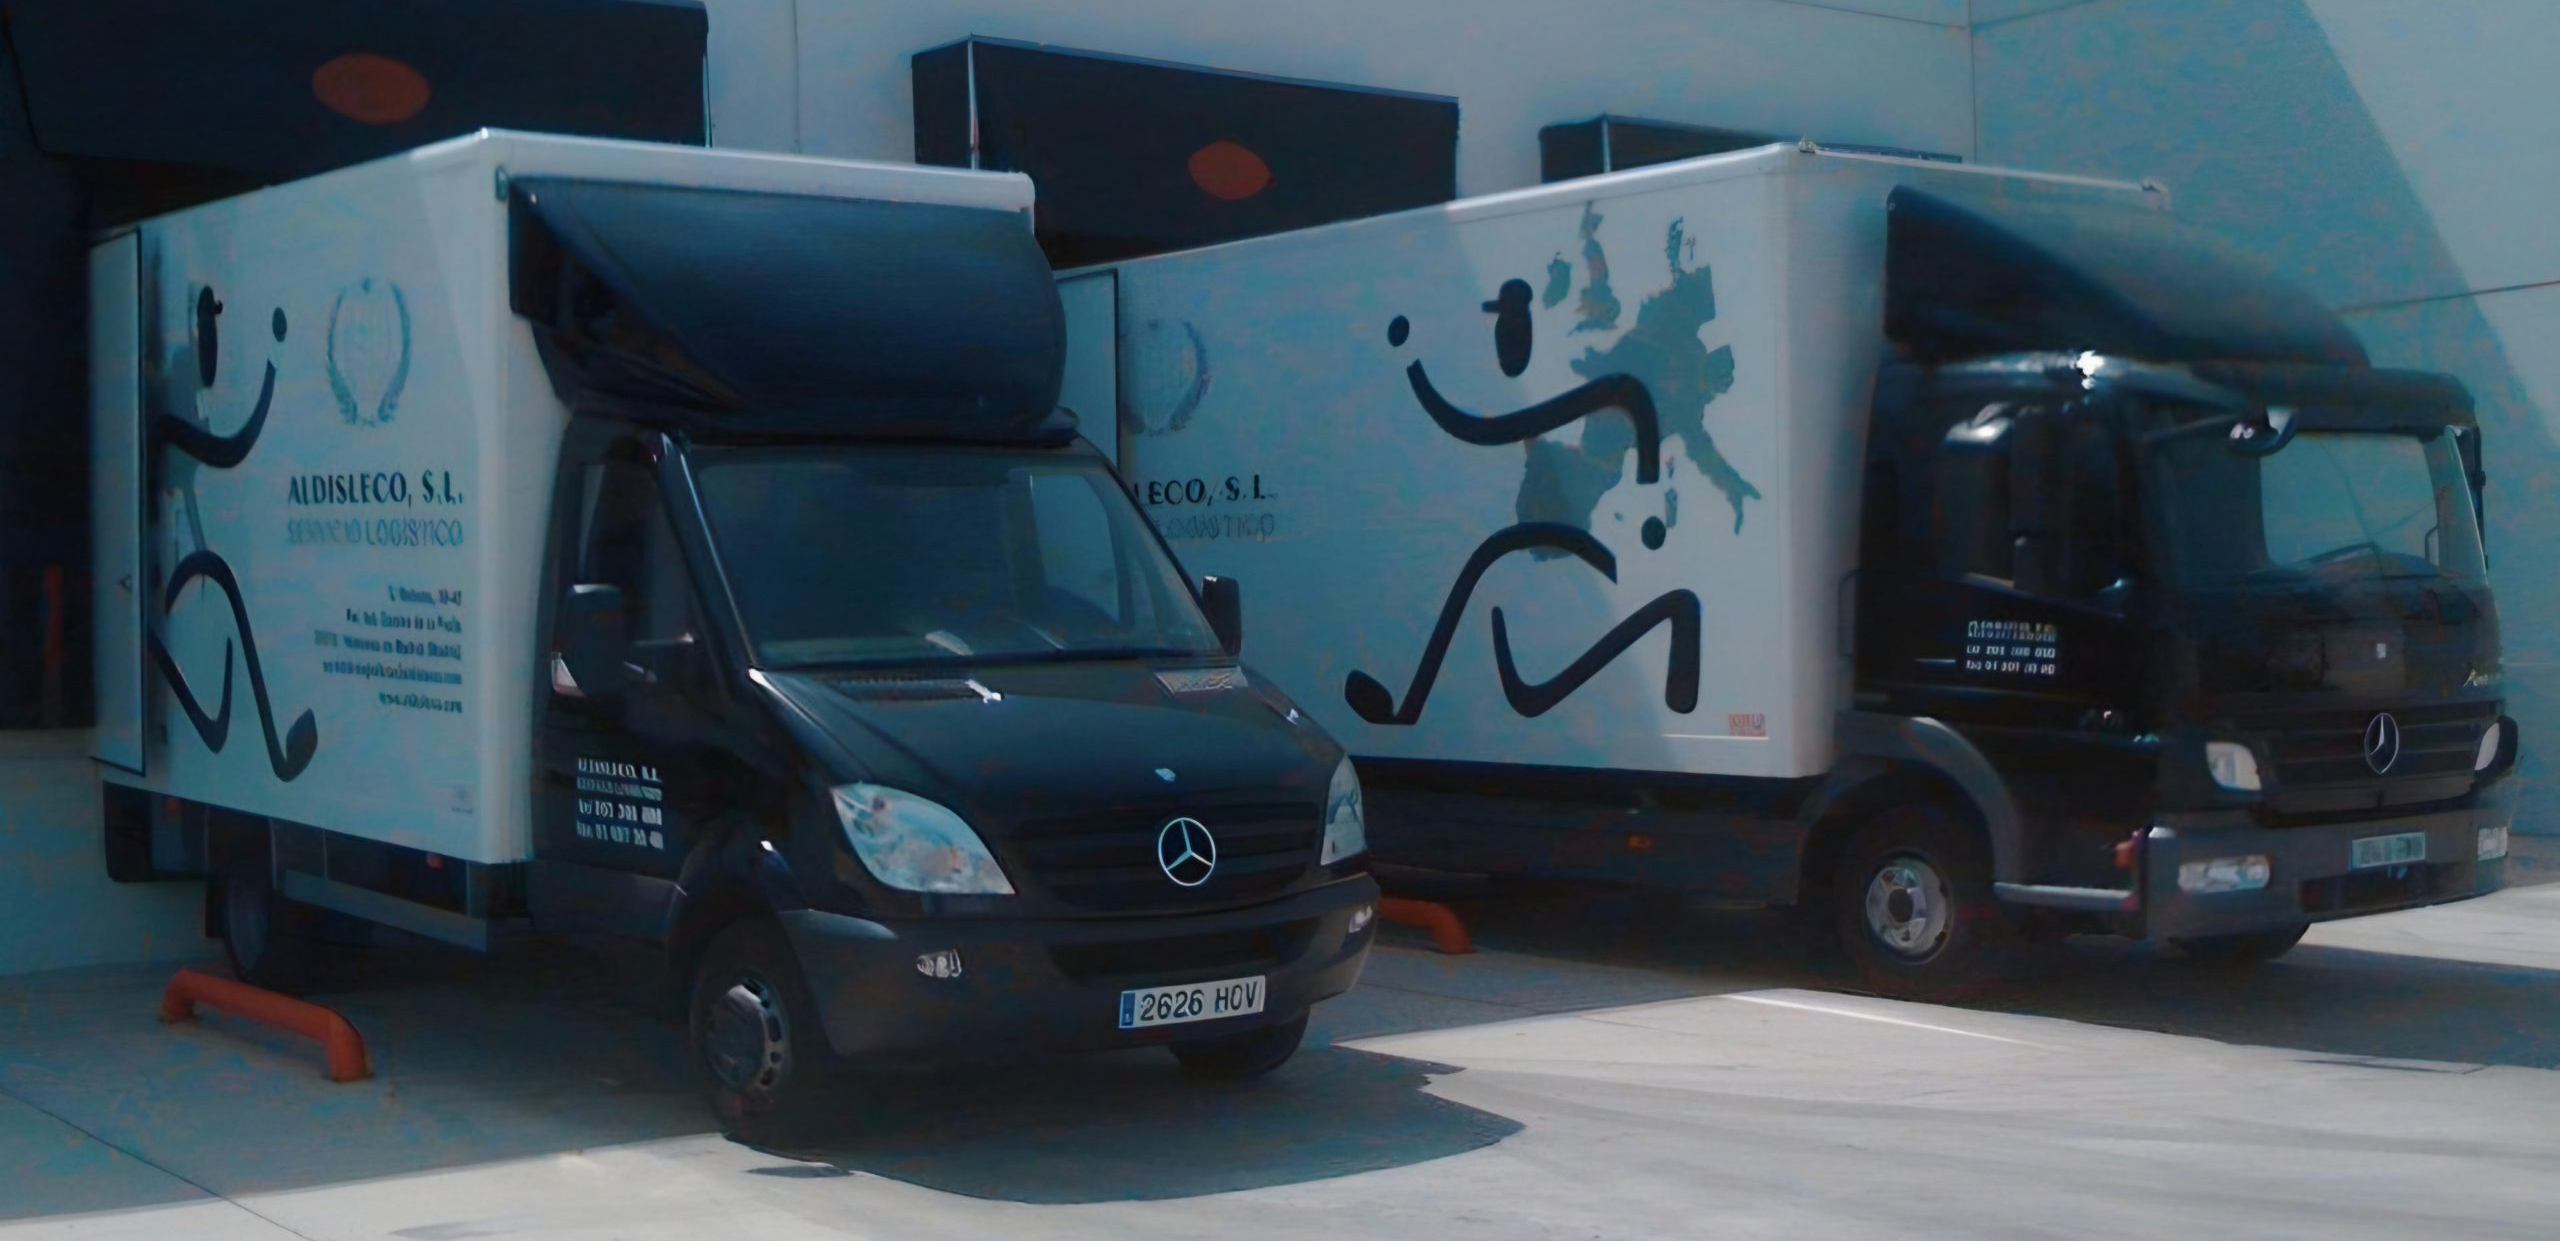 flota de camiones de aldisleco, empresa de mudanzas en Madrid